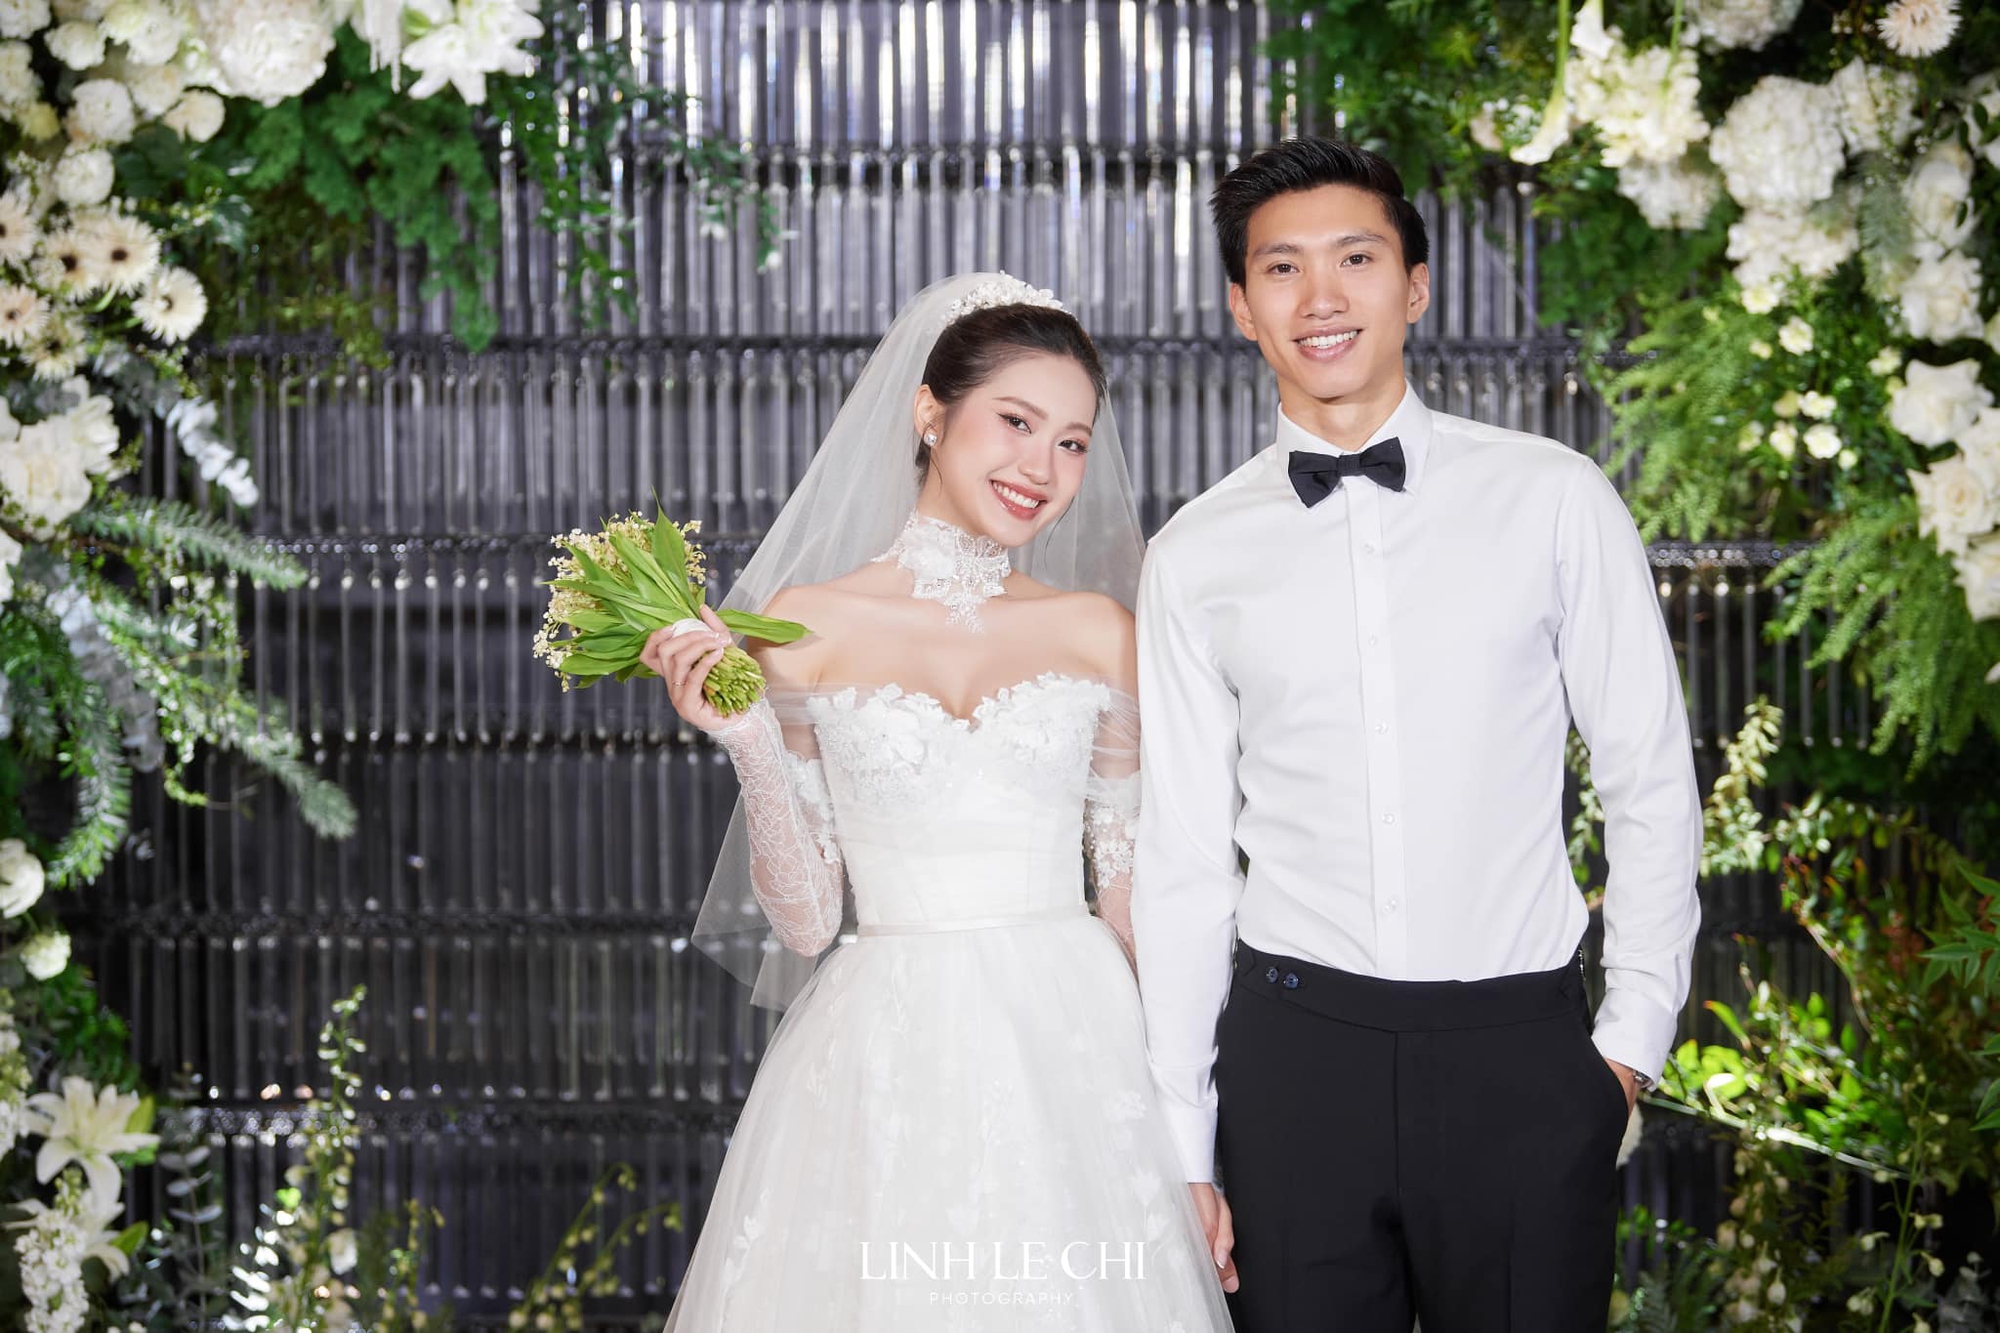 HLV Park Hang-seo và dàn sao dự tiệc cưới Đoàn Văn Hậu - Doãn Hải My - Ảnh 1.